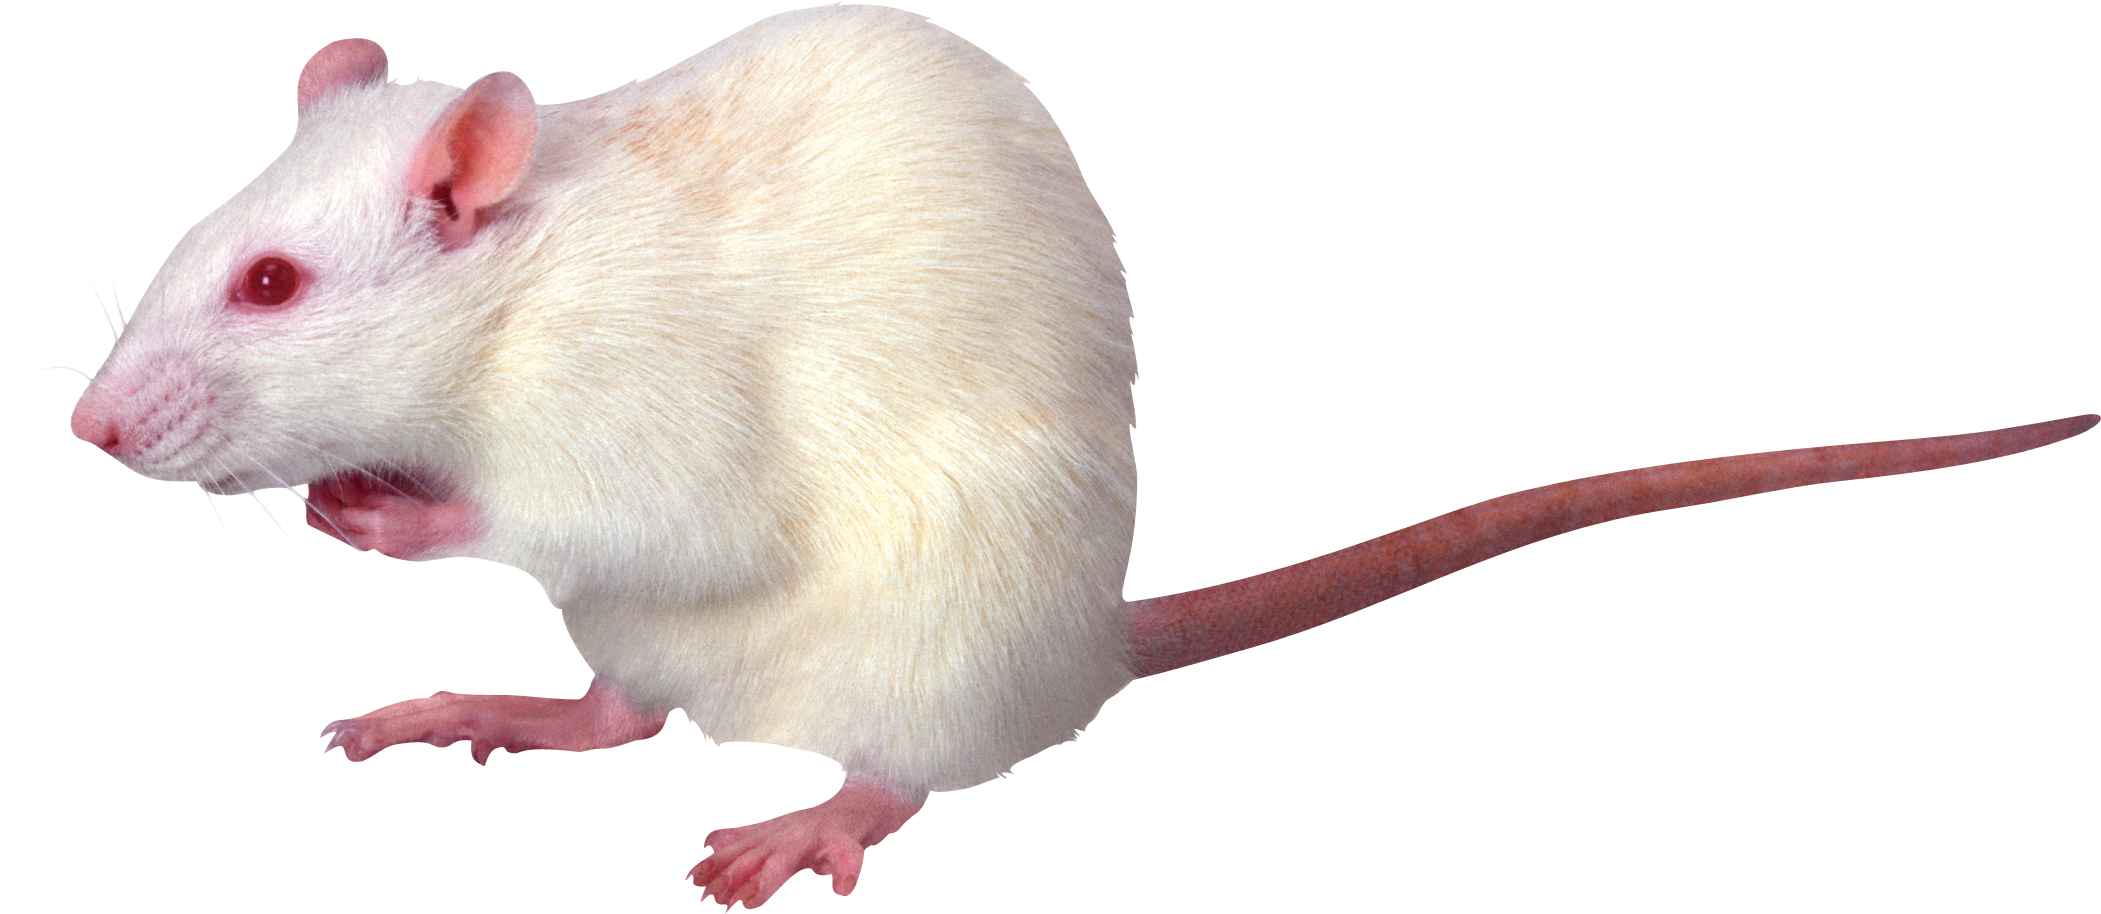 rat mouse png transparent rat mouse images pluspng #23071